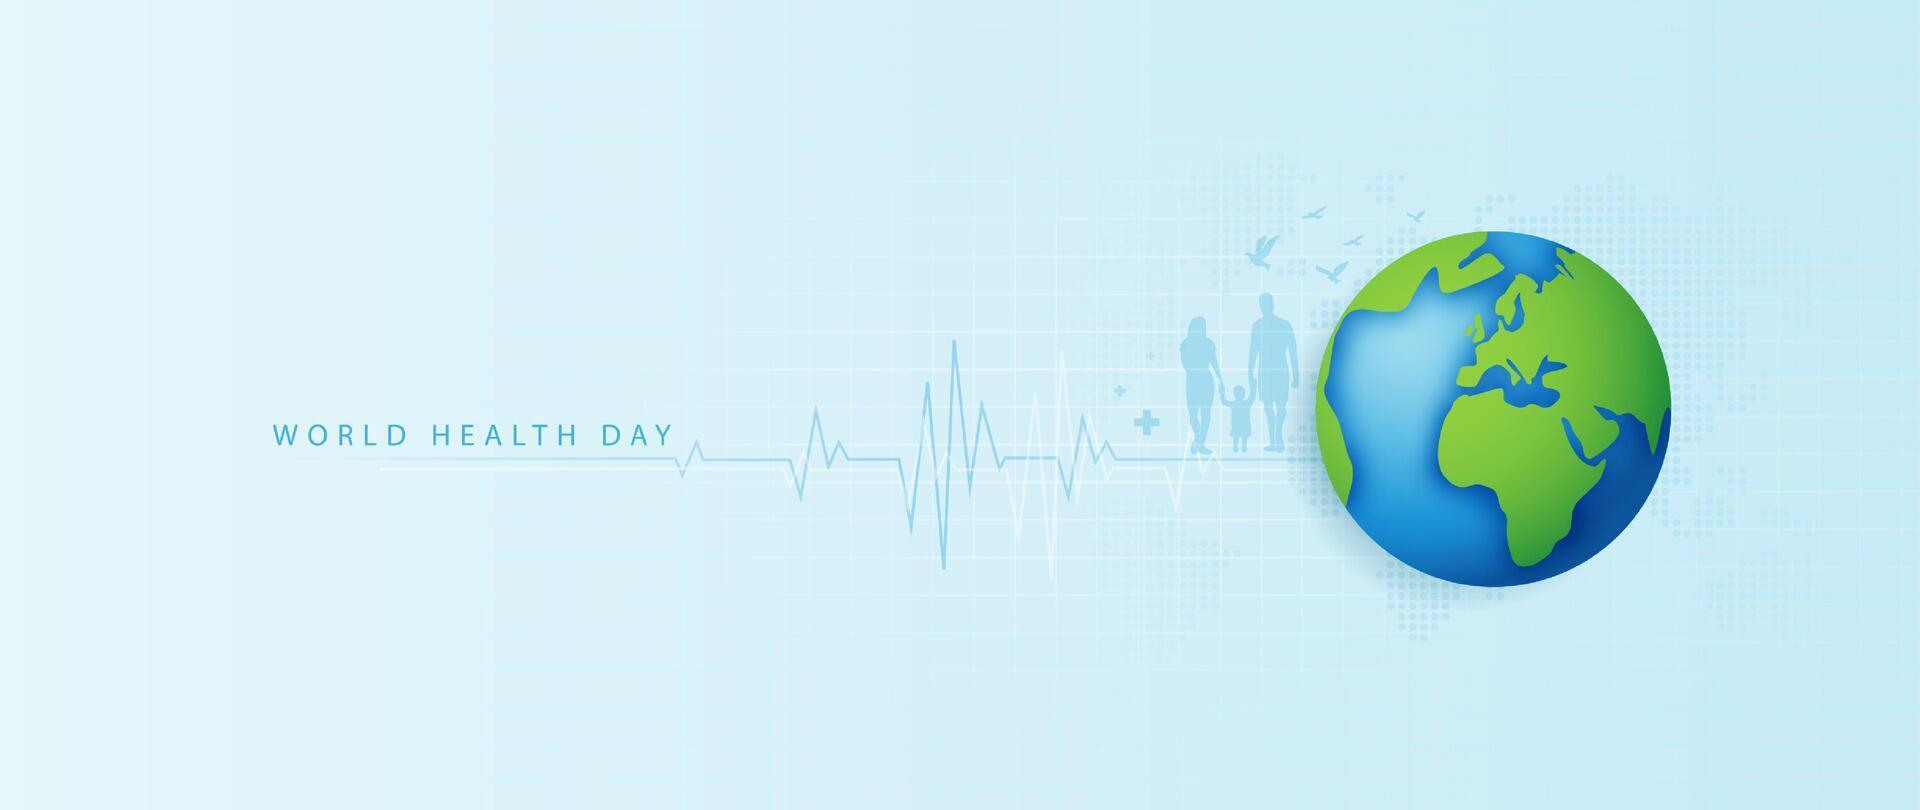 mundo salud día es un global salud conciencia día celebrado cada año en 7mo abril. salud cuidado médico Ciencias con icono digital tecnología mundo concepto moderno negocio. vector diseño